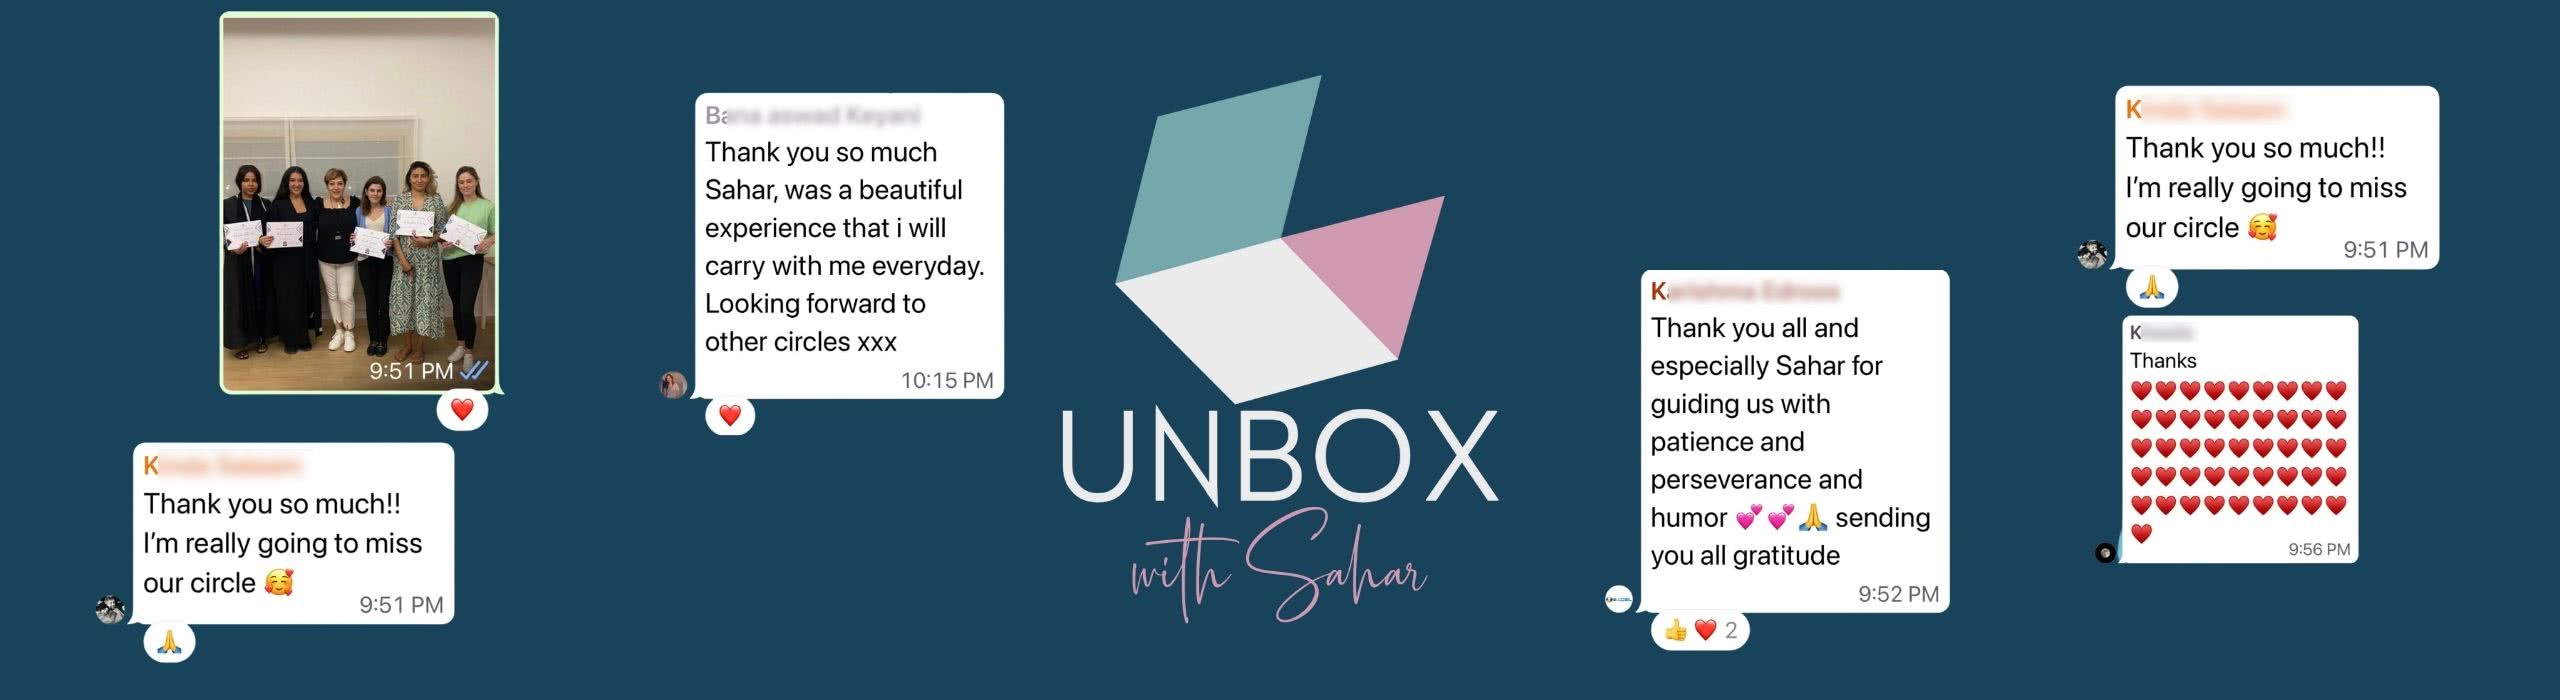 Unbox With Sahar